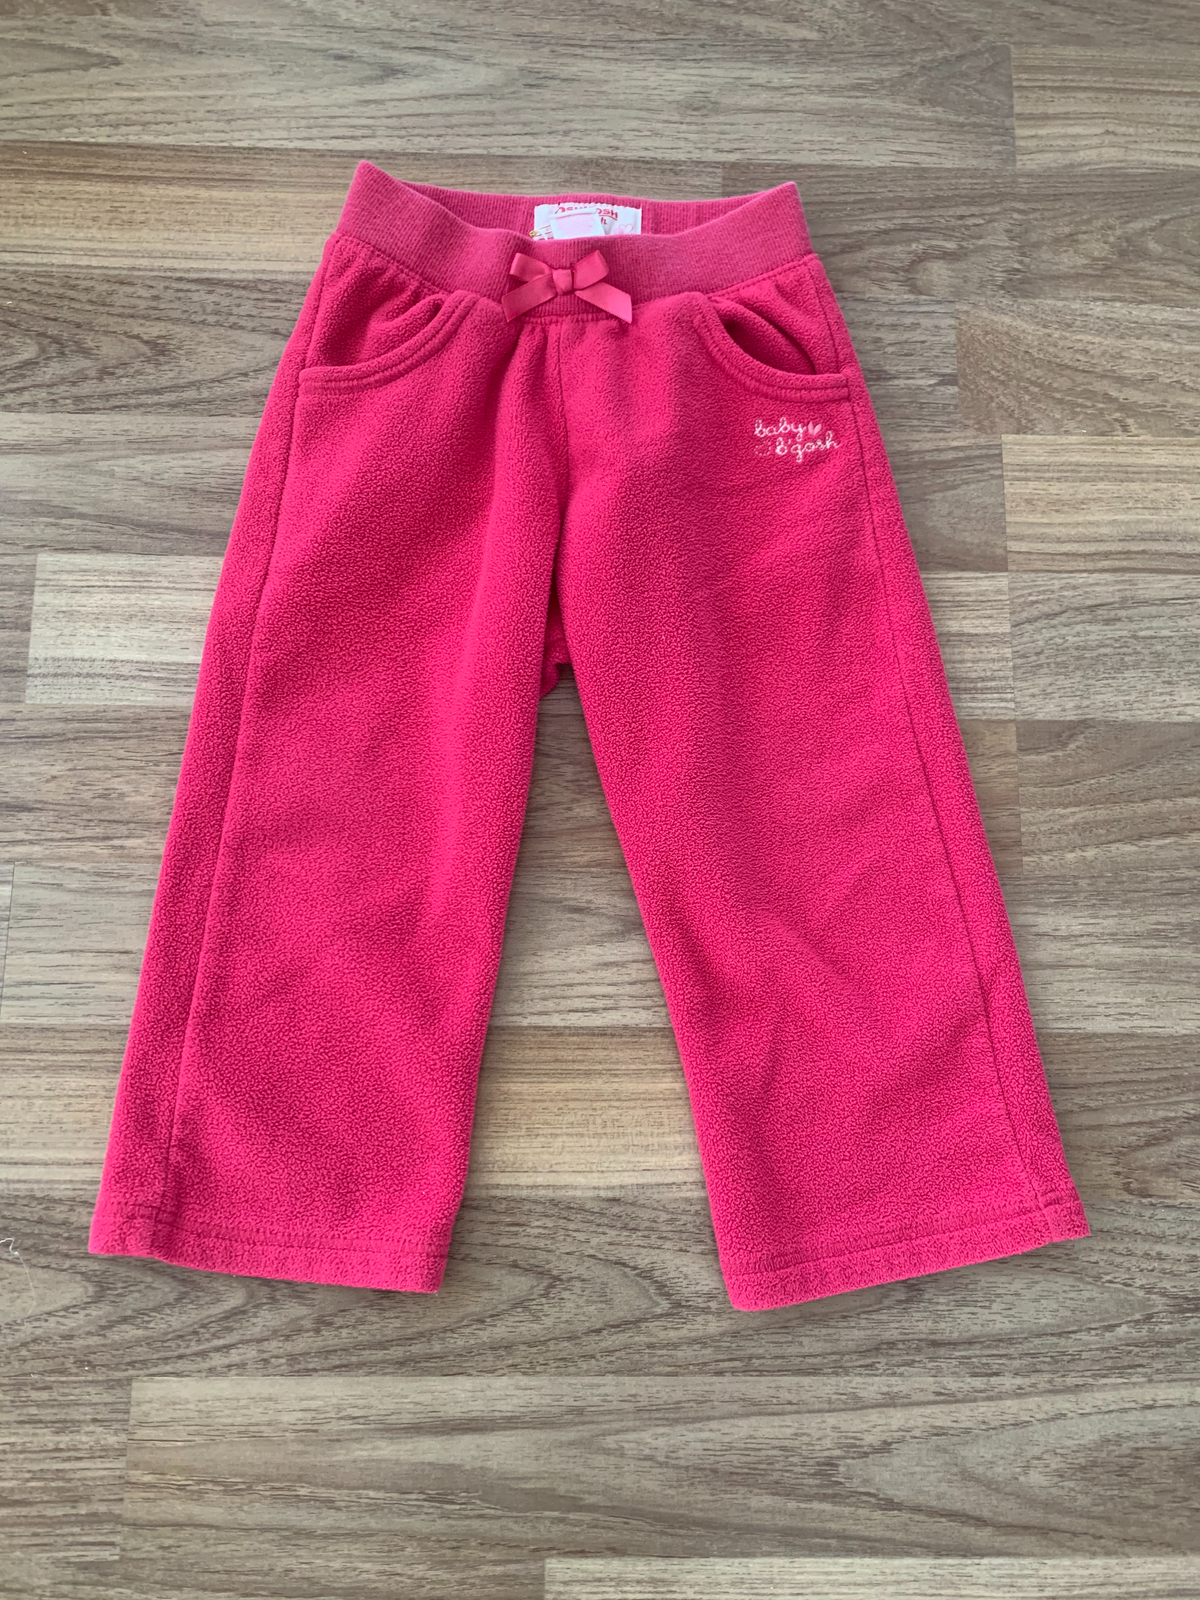 Fleece Pants (Girls Size 18M)